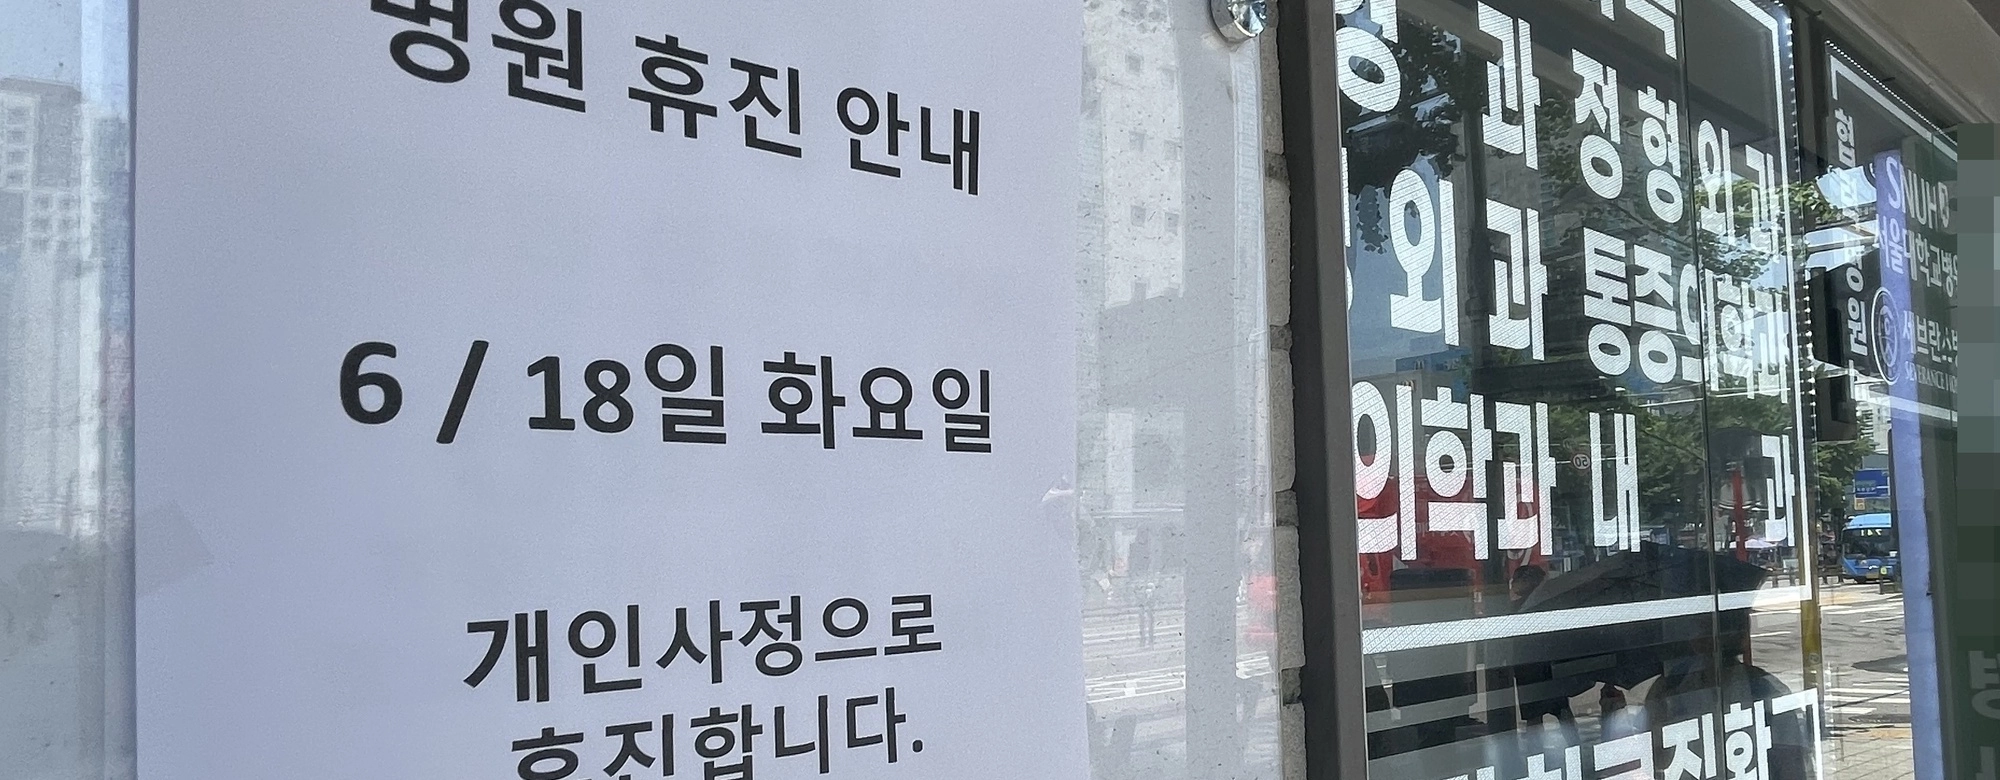 동네의원 ‘묻지마 휴진’ 행렬, 지역민·맘카페 ‘불매운동’ 반발 